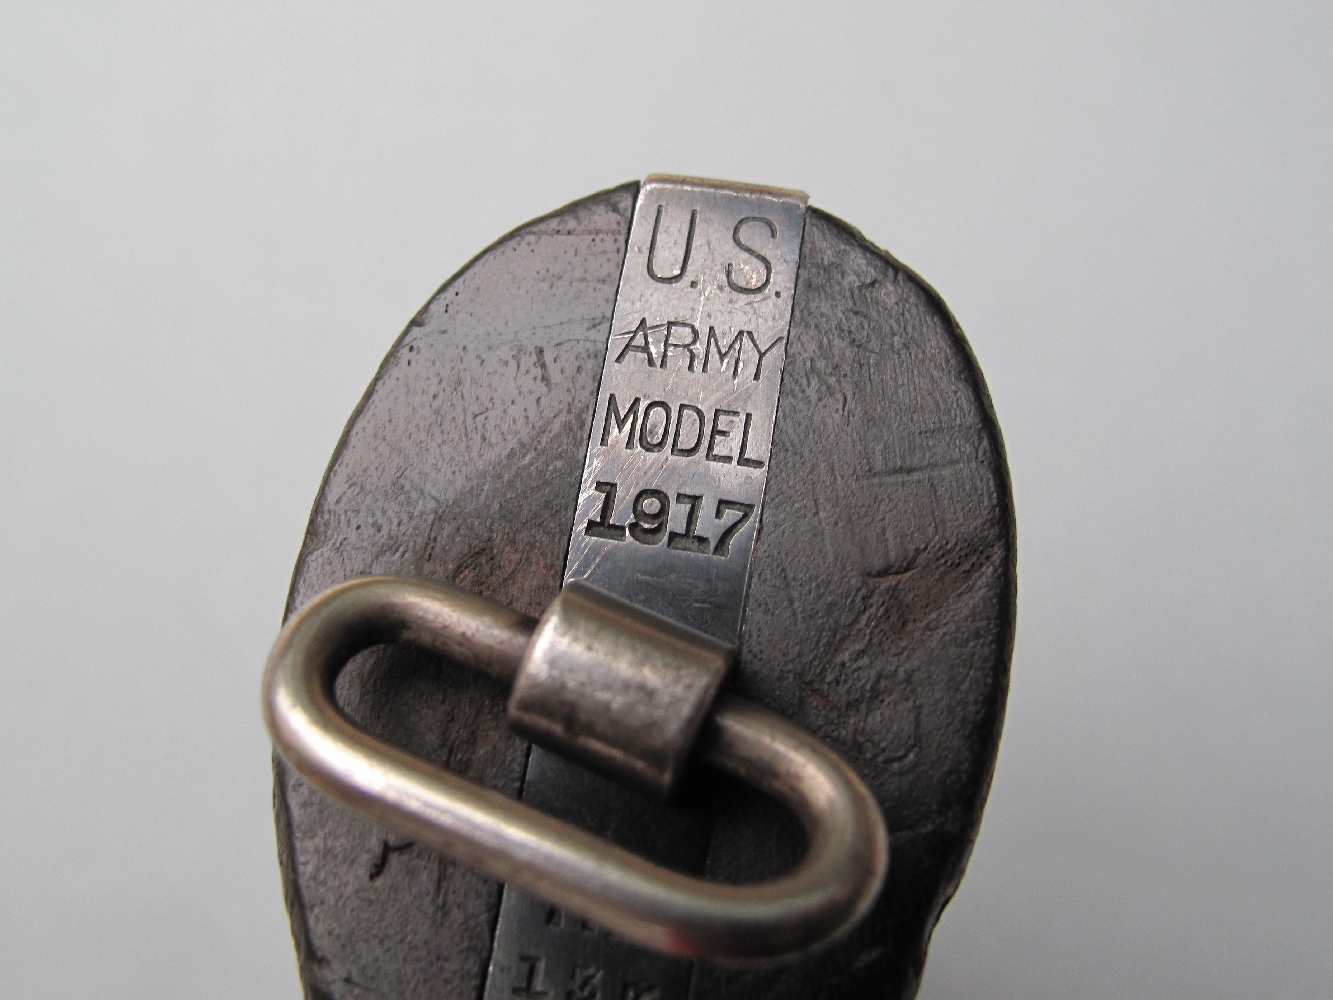 Cet ancien revolver réglementaire de l’armée américaine comporte de très nombreux marquages qui permettent de l’identifier aisément, à commencer par ceux qui sont frappés au talon de sa poignée.